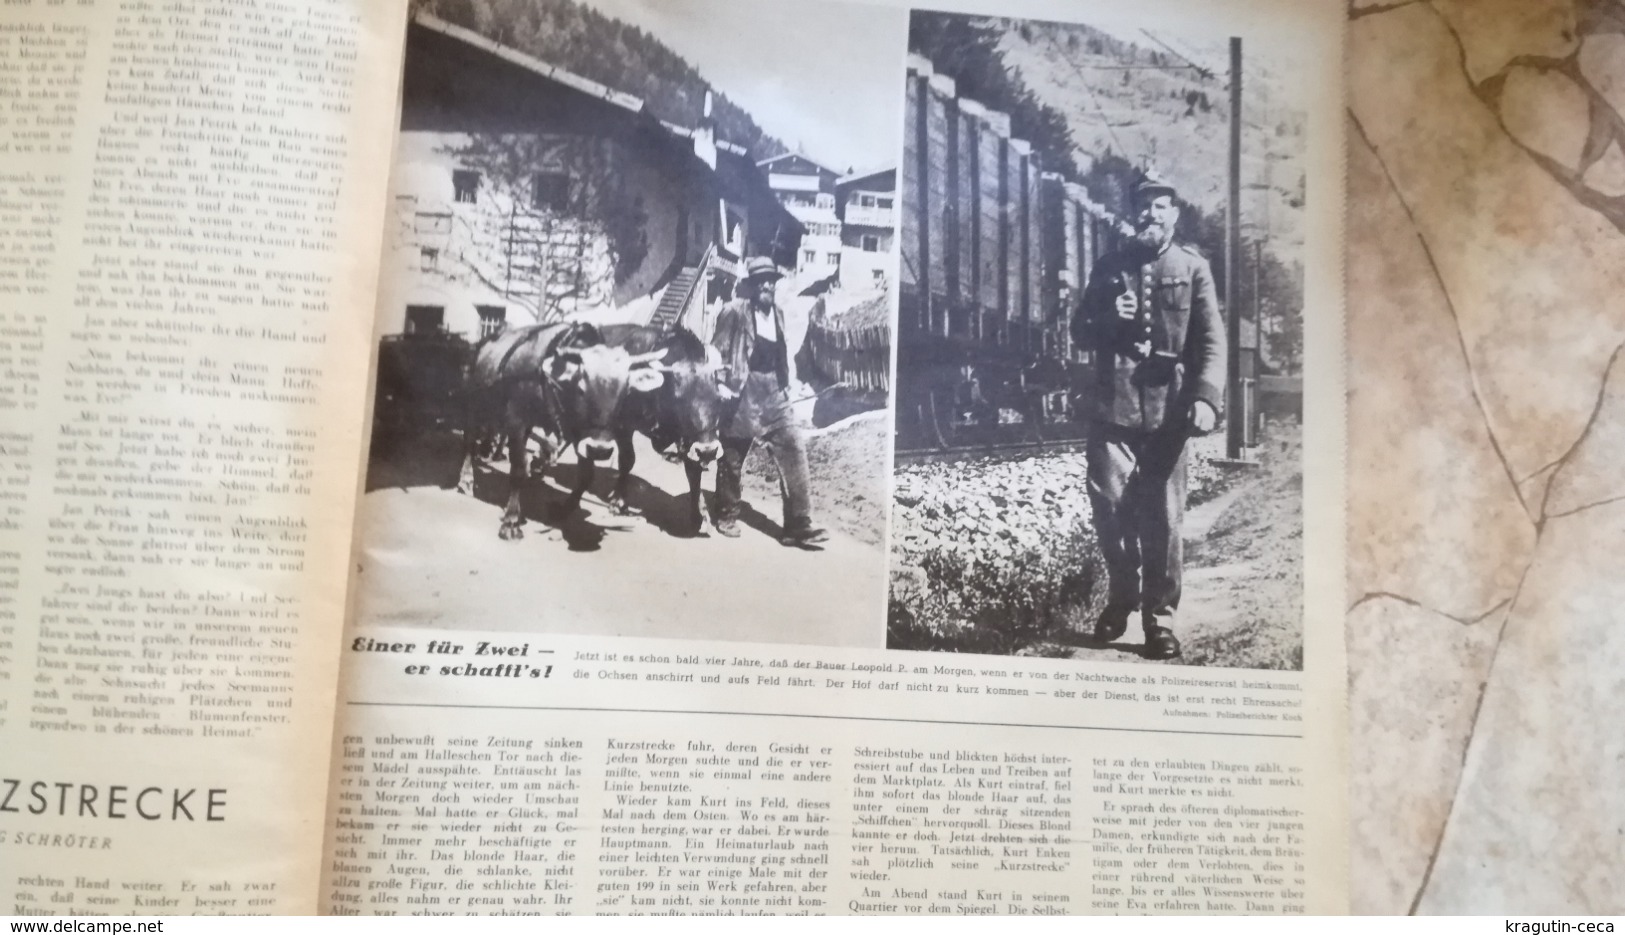 1943 WWII WW2 Kölnische Illustrierte Zeitung NAZI GERMANY ARMY MAGAZINE MILITARY DEUTSCH ZEITSCHRIFT BURMA THAILAND USA